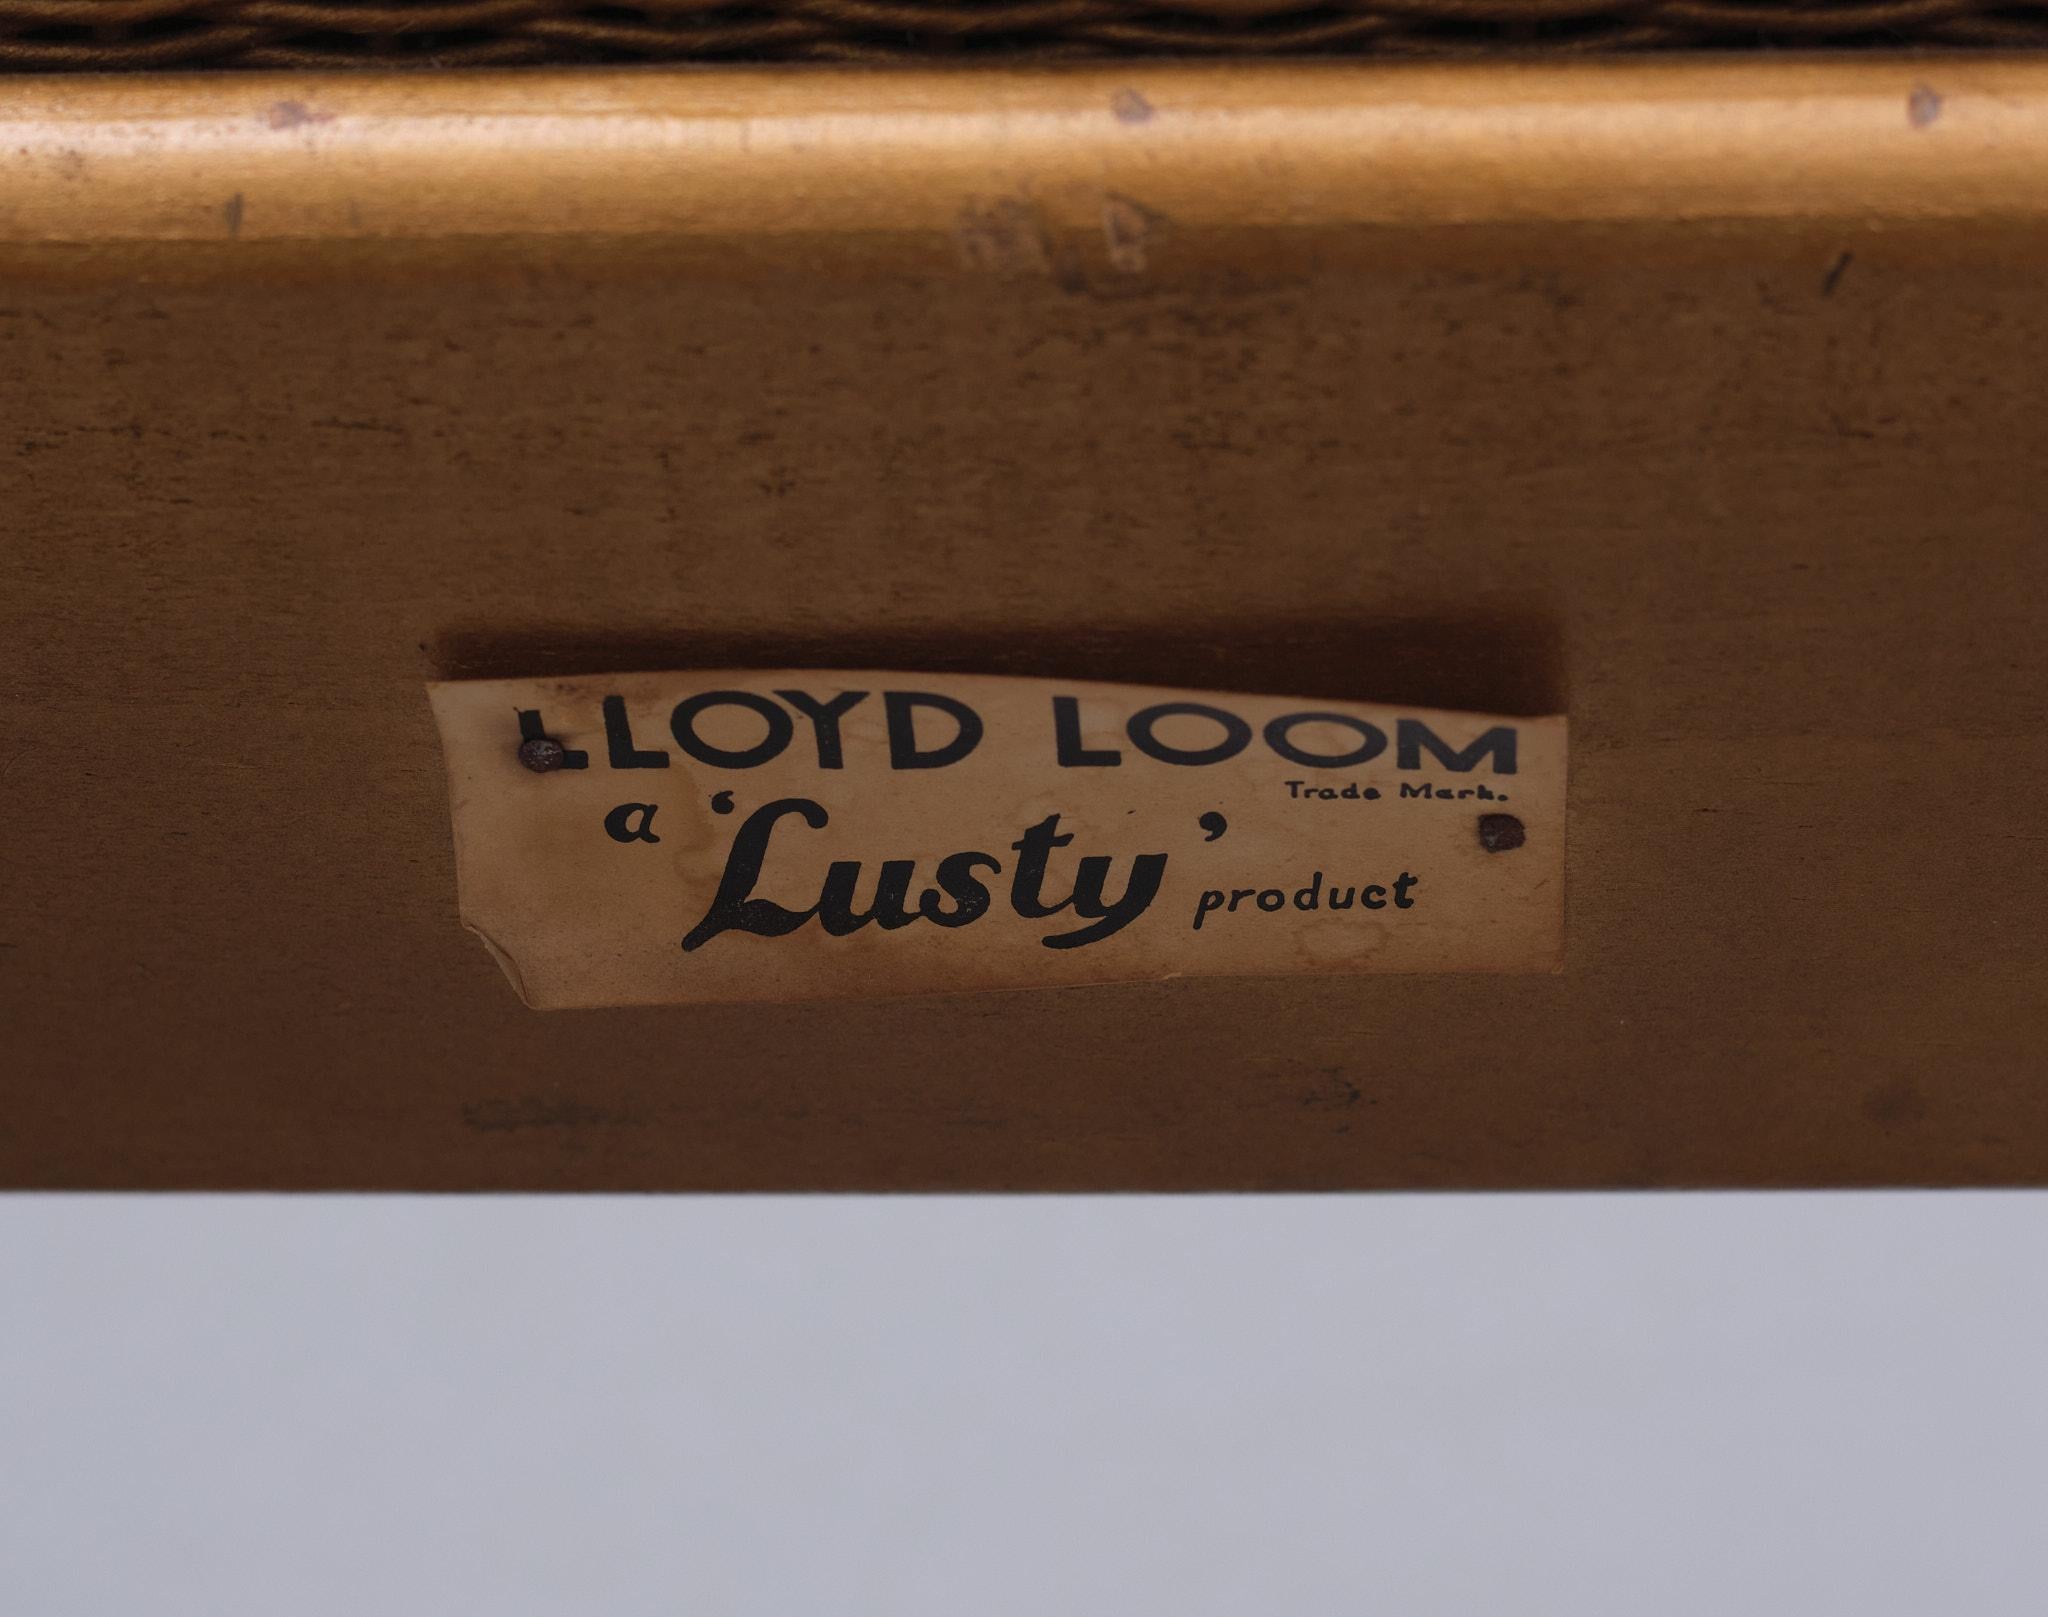 lusty lloyd loom furniture